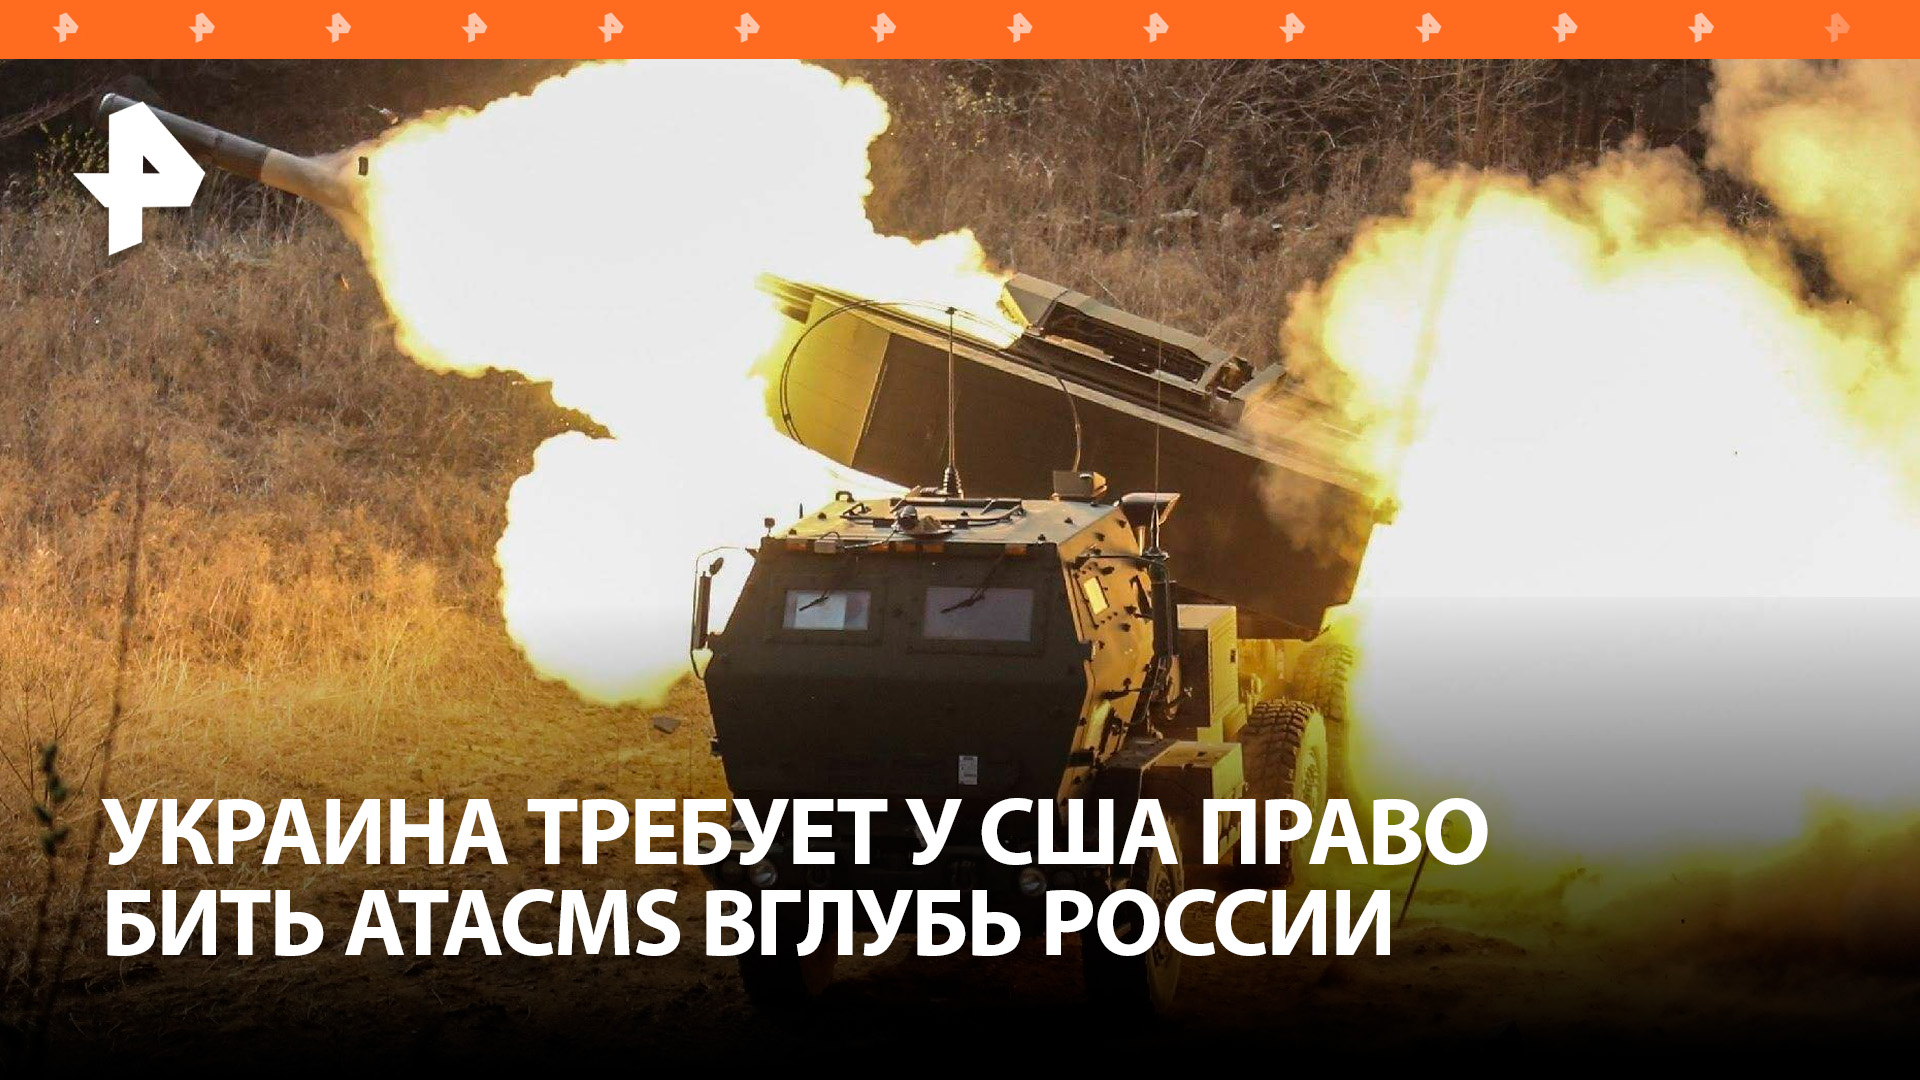 Украина давит на США, добиваясь снятия запрета на удары ATACMS вглубь РФ  западные СМИ / РЕН